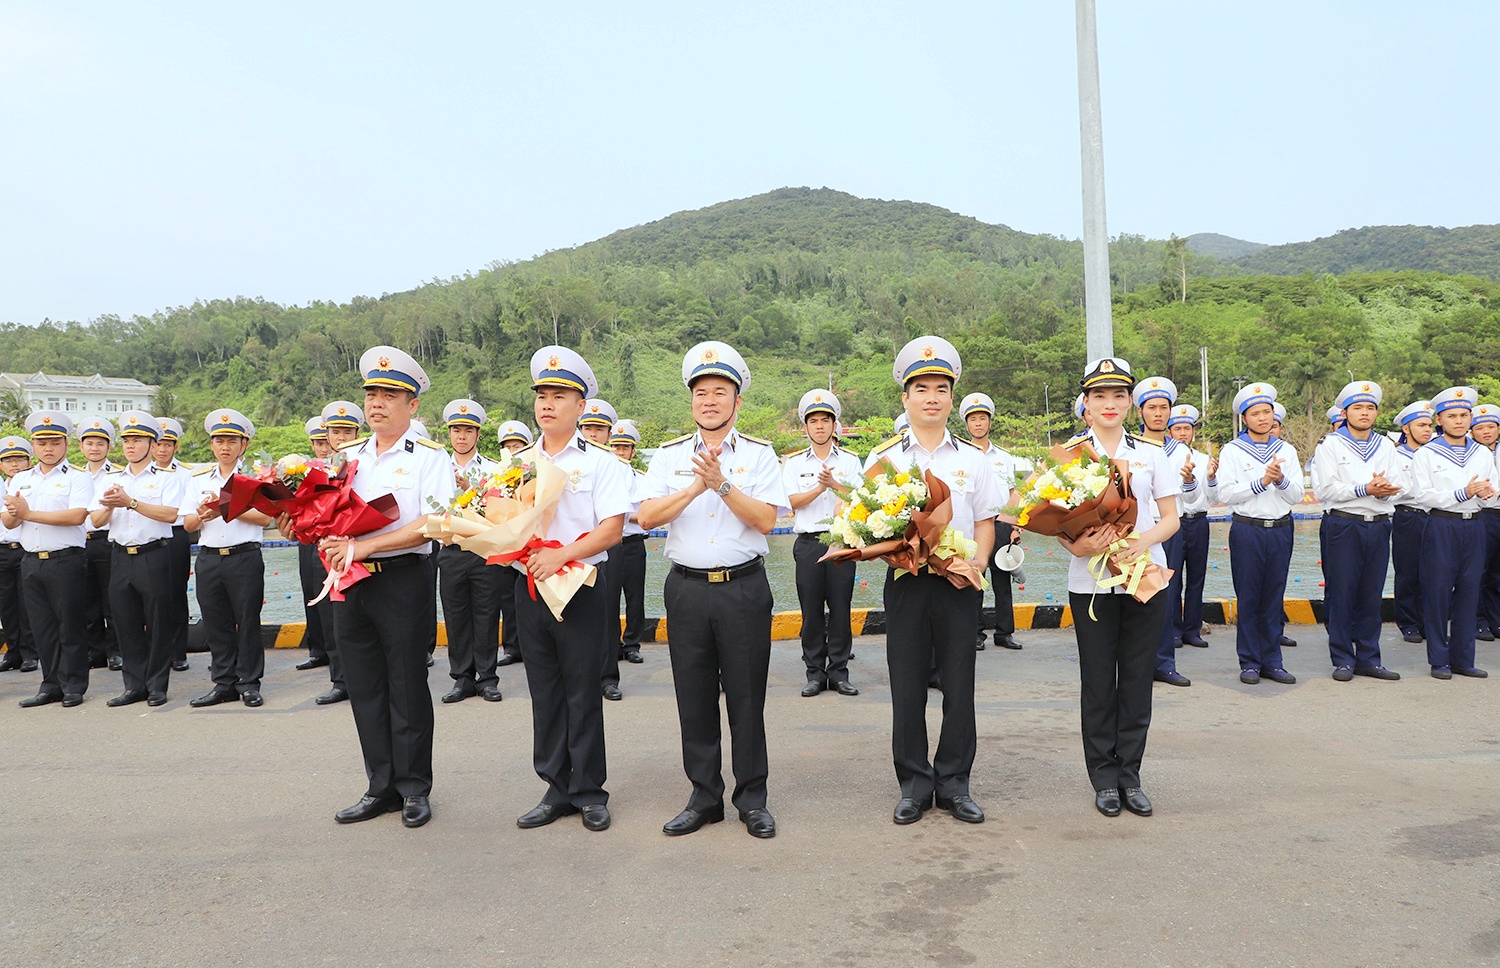 海军第三区司令部祝贺代表团完成任务回国。